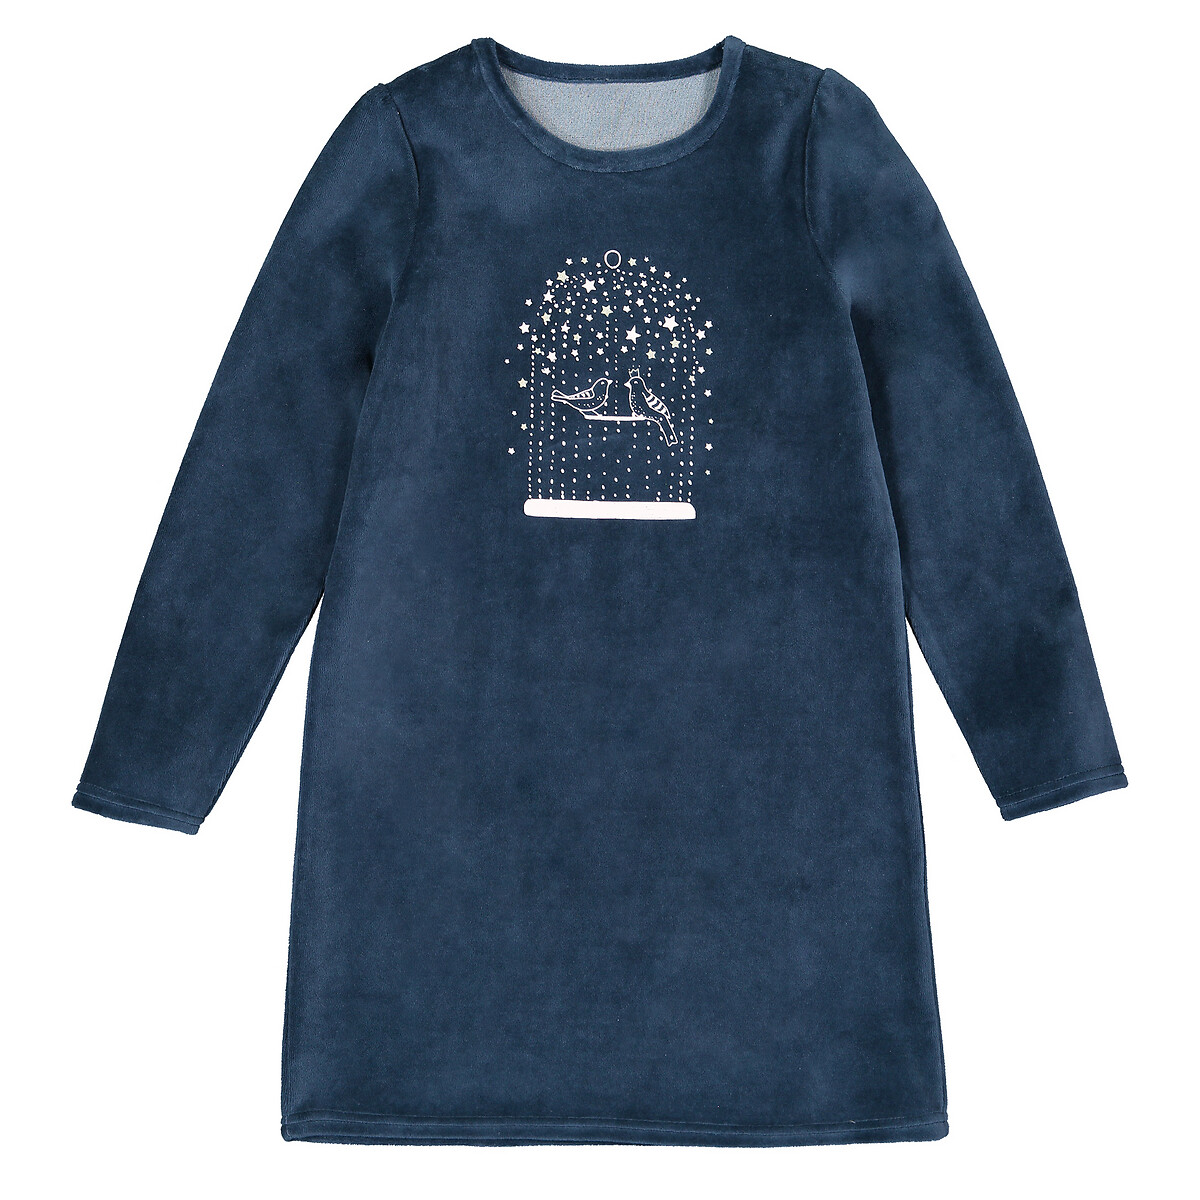 Рубашка La Redoute Ночная из велюра 3-12 лет 6 лет - 114 см синий, размер 6 - фото 1